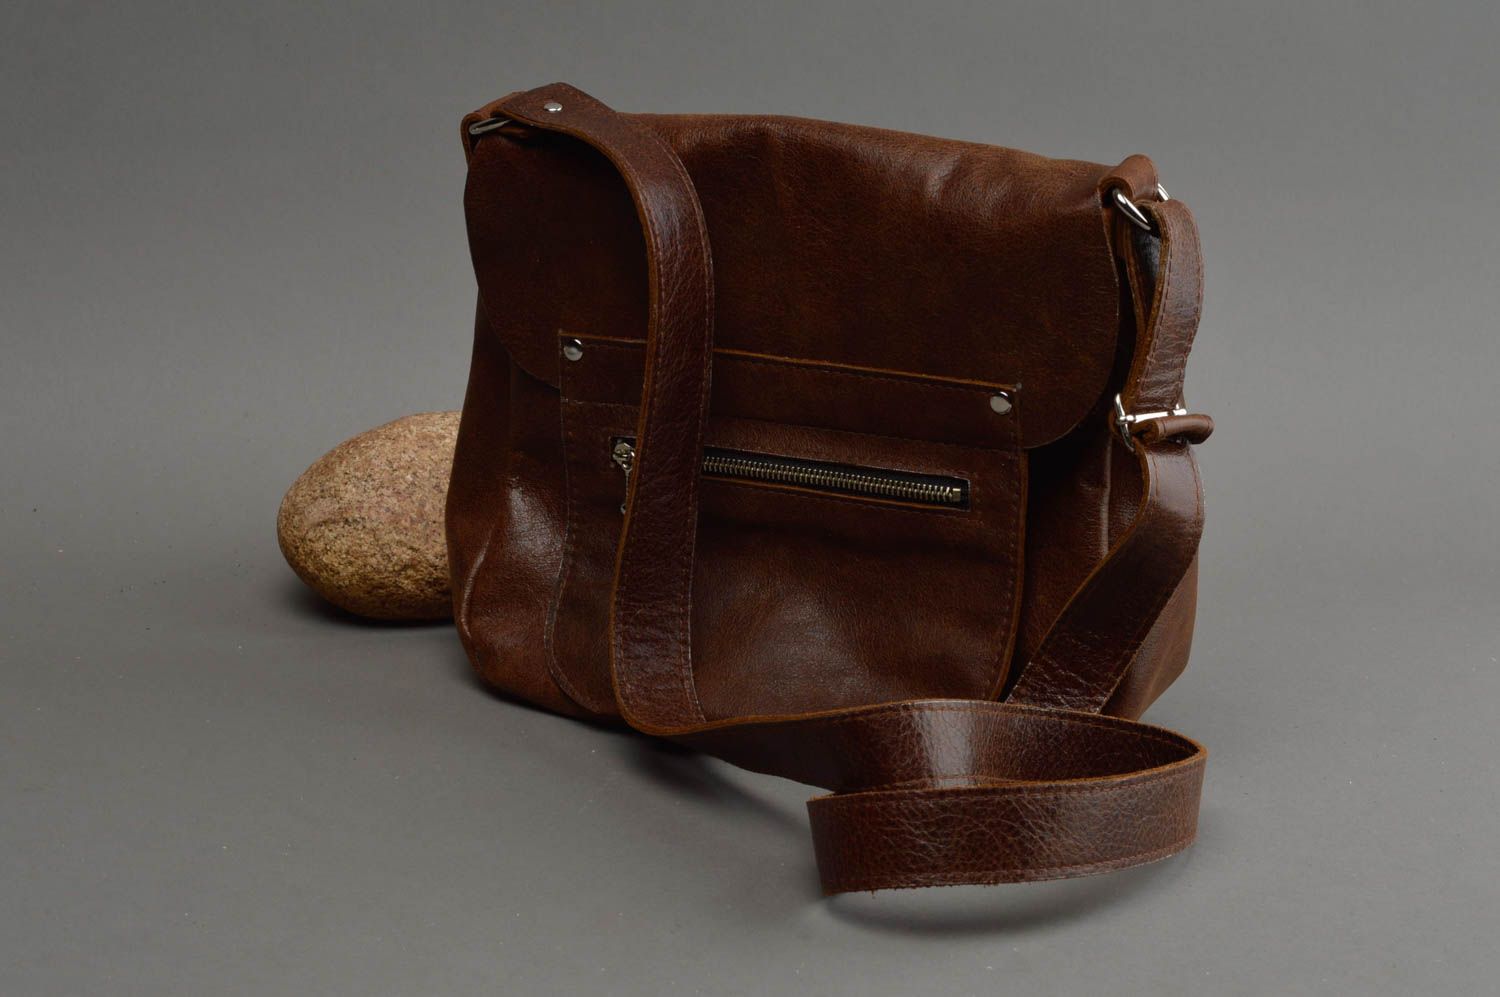 Unusual handmade leather handbag designer shoulder bag leather goods for her photo 1